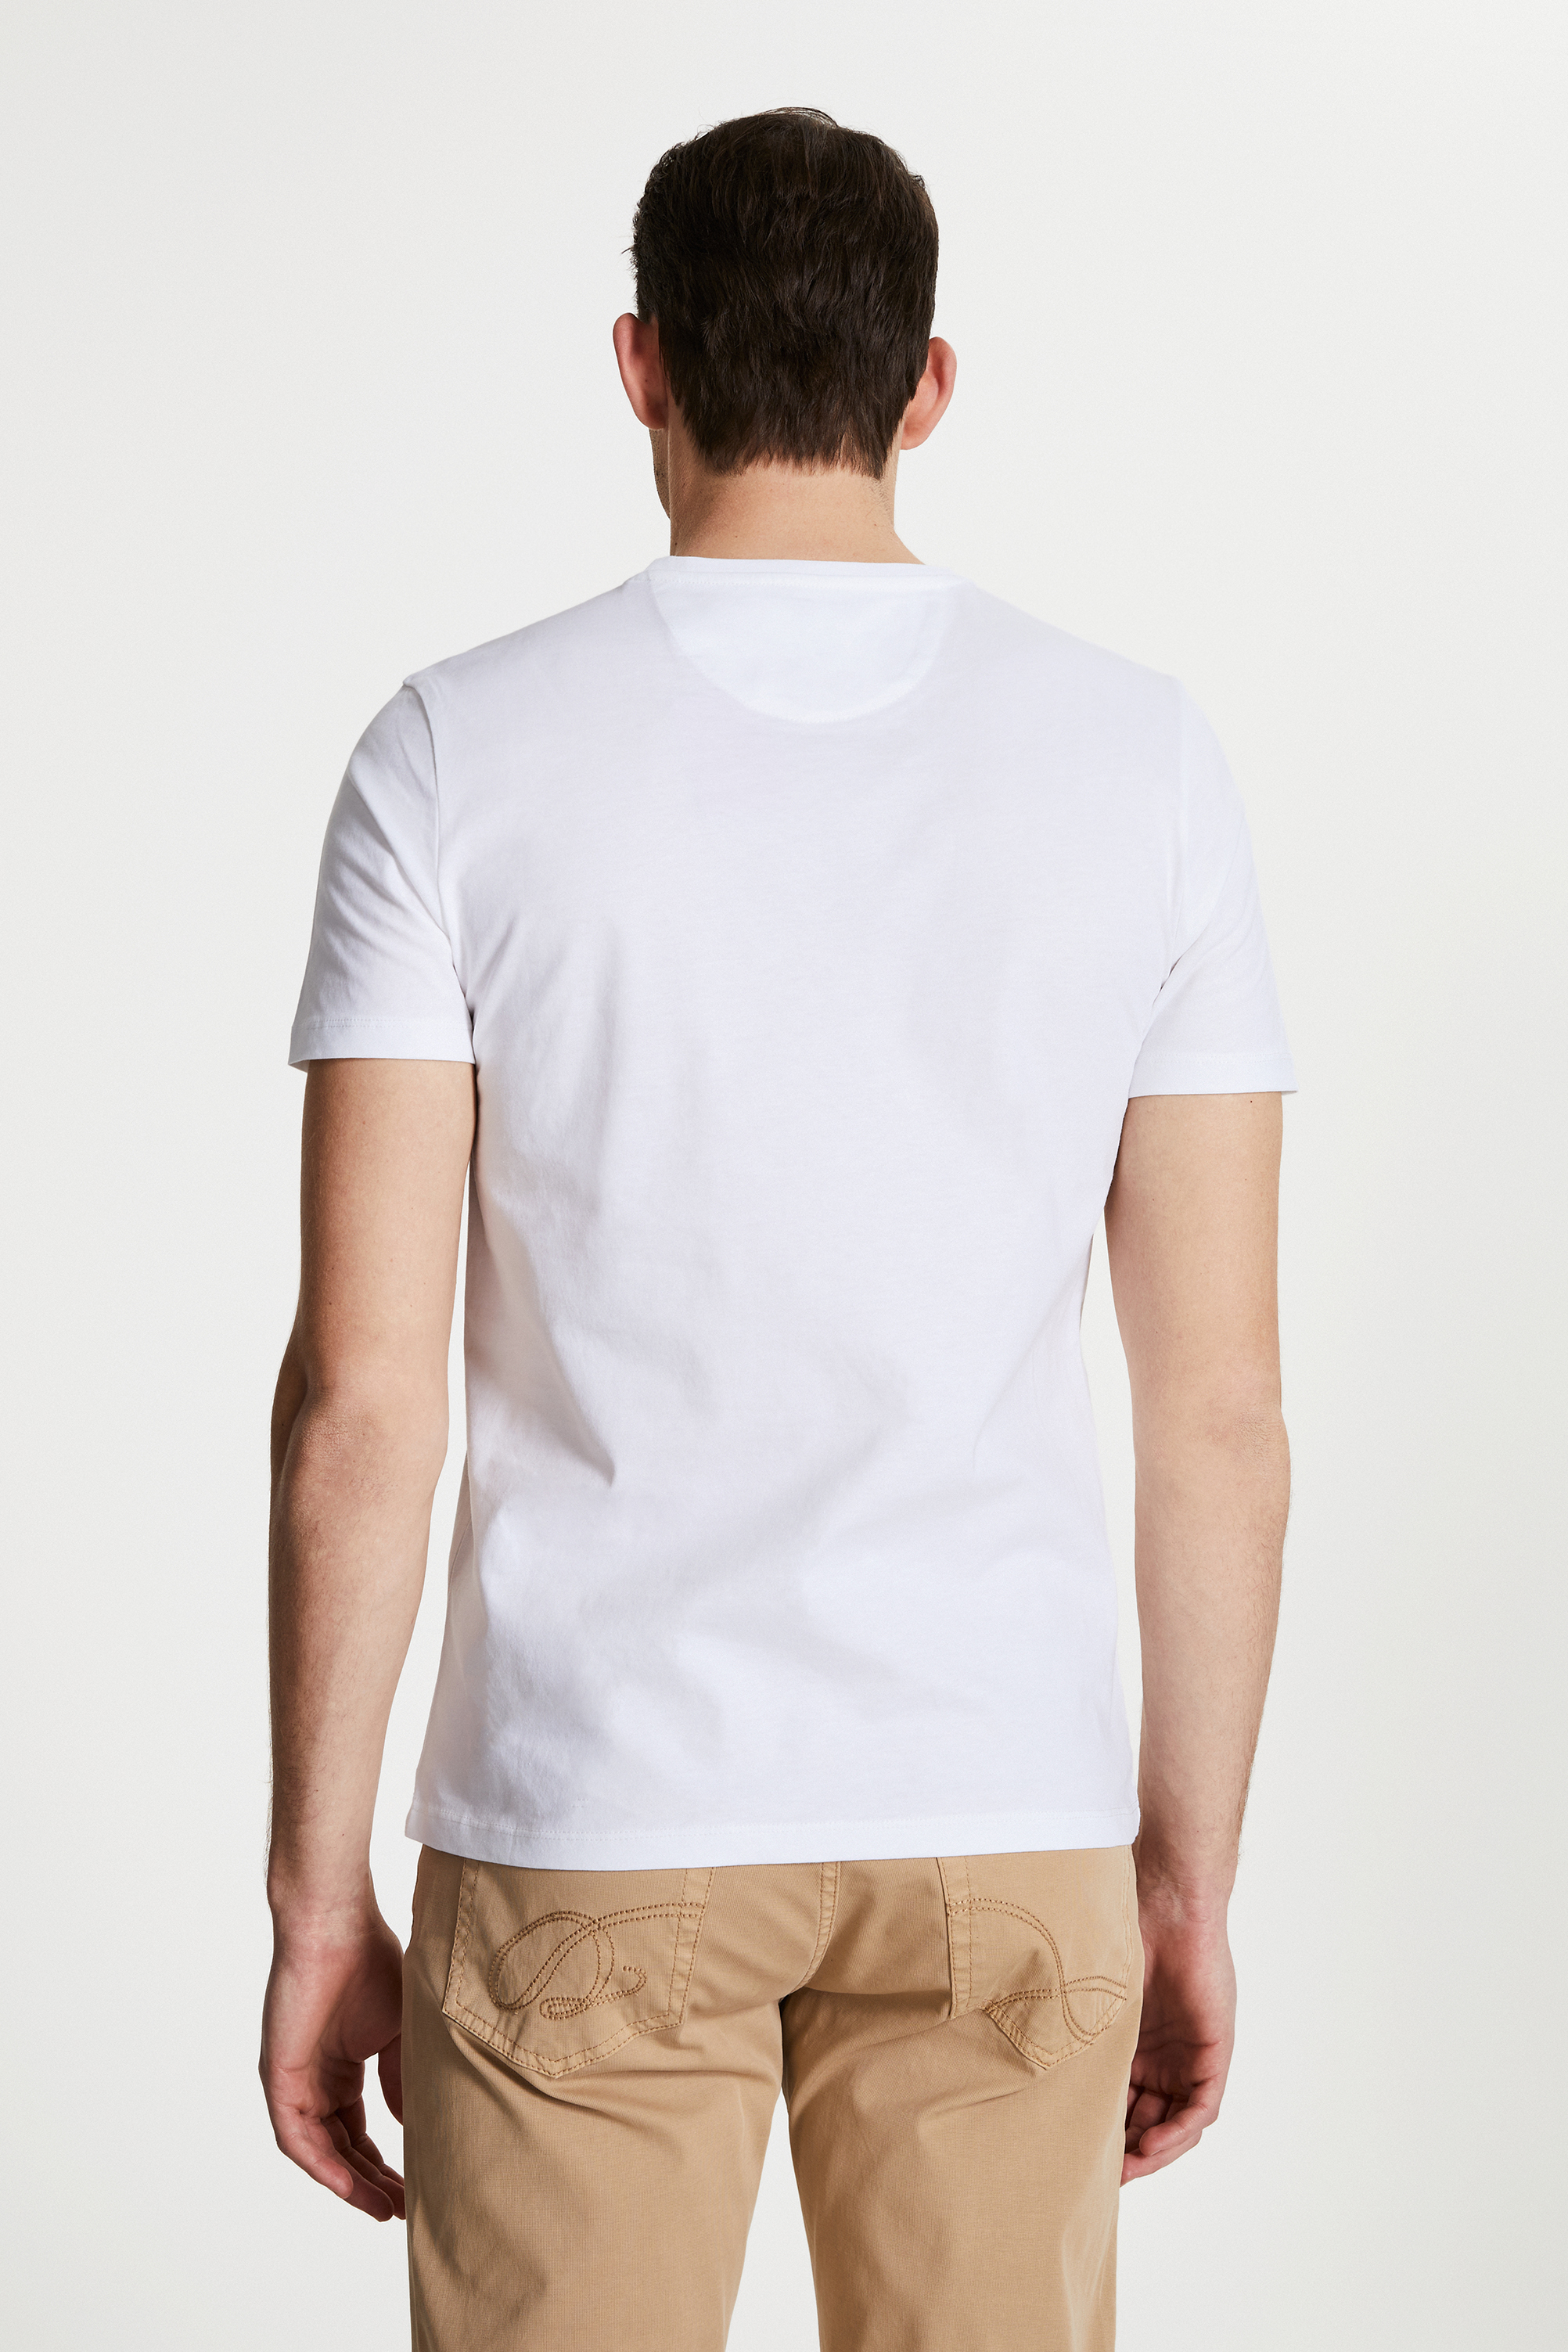 Damat Tween Damat Beyaz Çizgili Baskılı T-shirt. 3